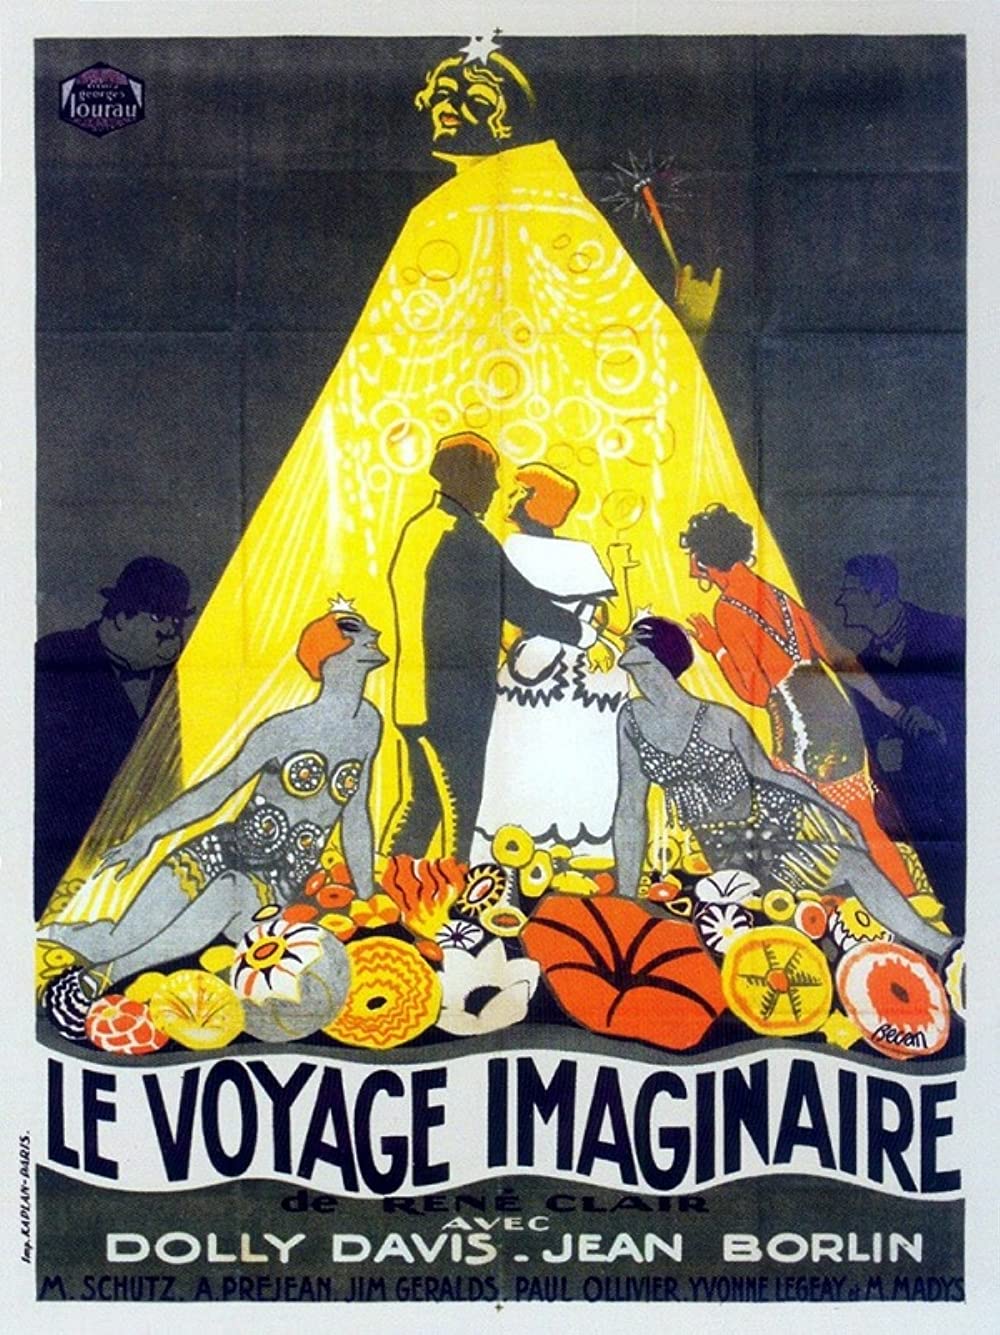 Filmbeschreibung zu Le voyage imaginaire